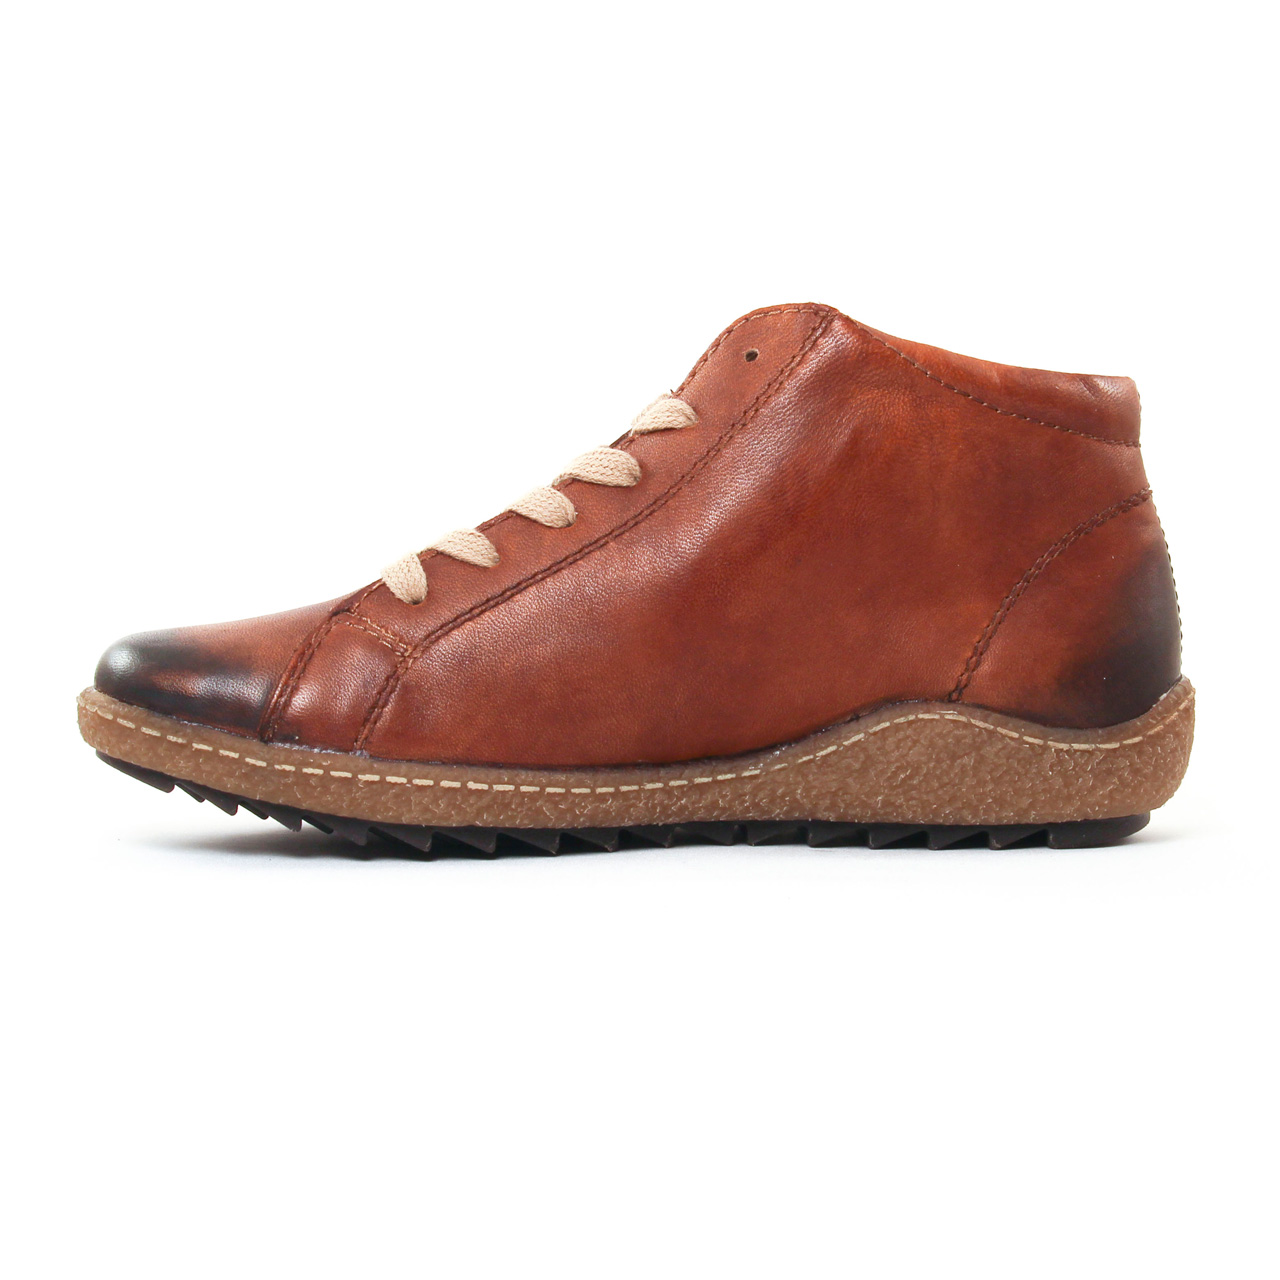 Achat chaussures Remonte Femme Chaussure montante, vente Remonte R8271-22  Chestnut Havane - Basket montante Femme marron